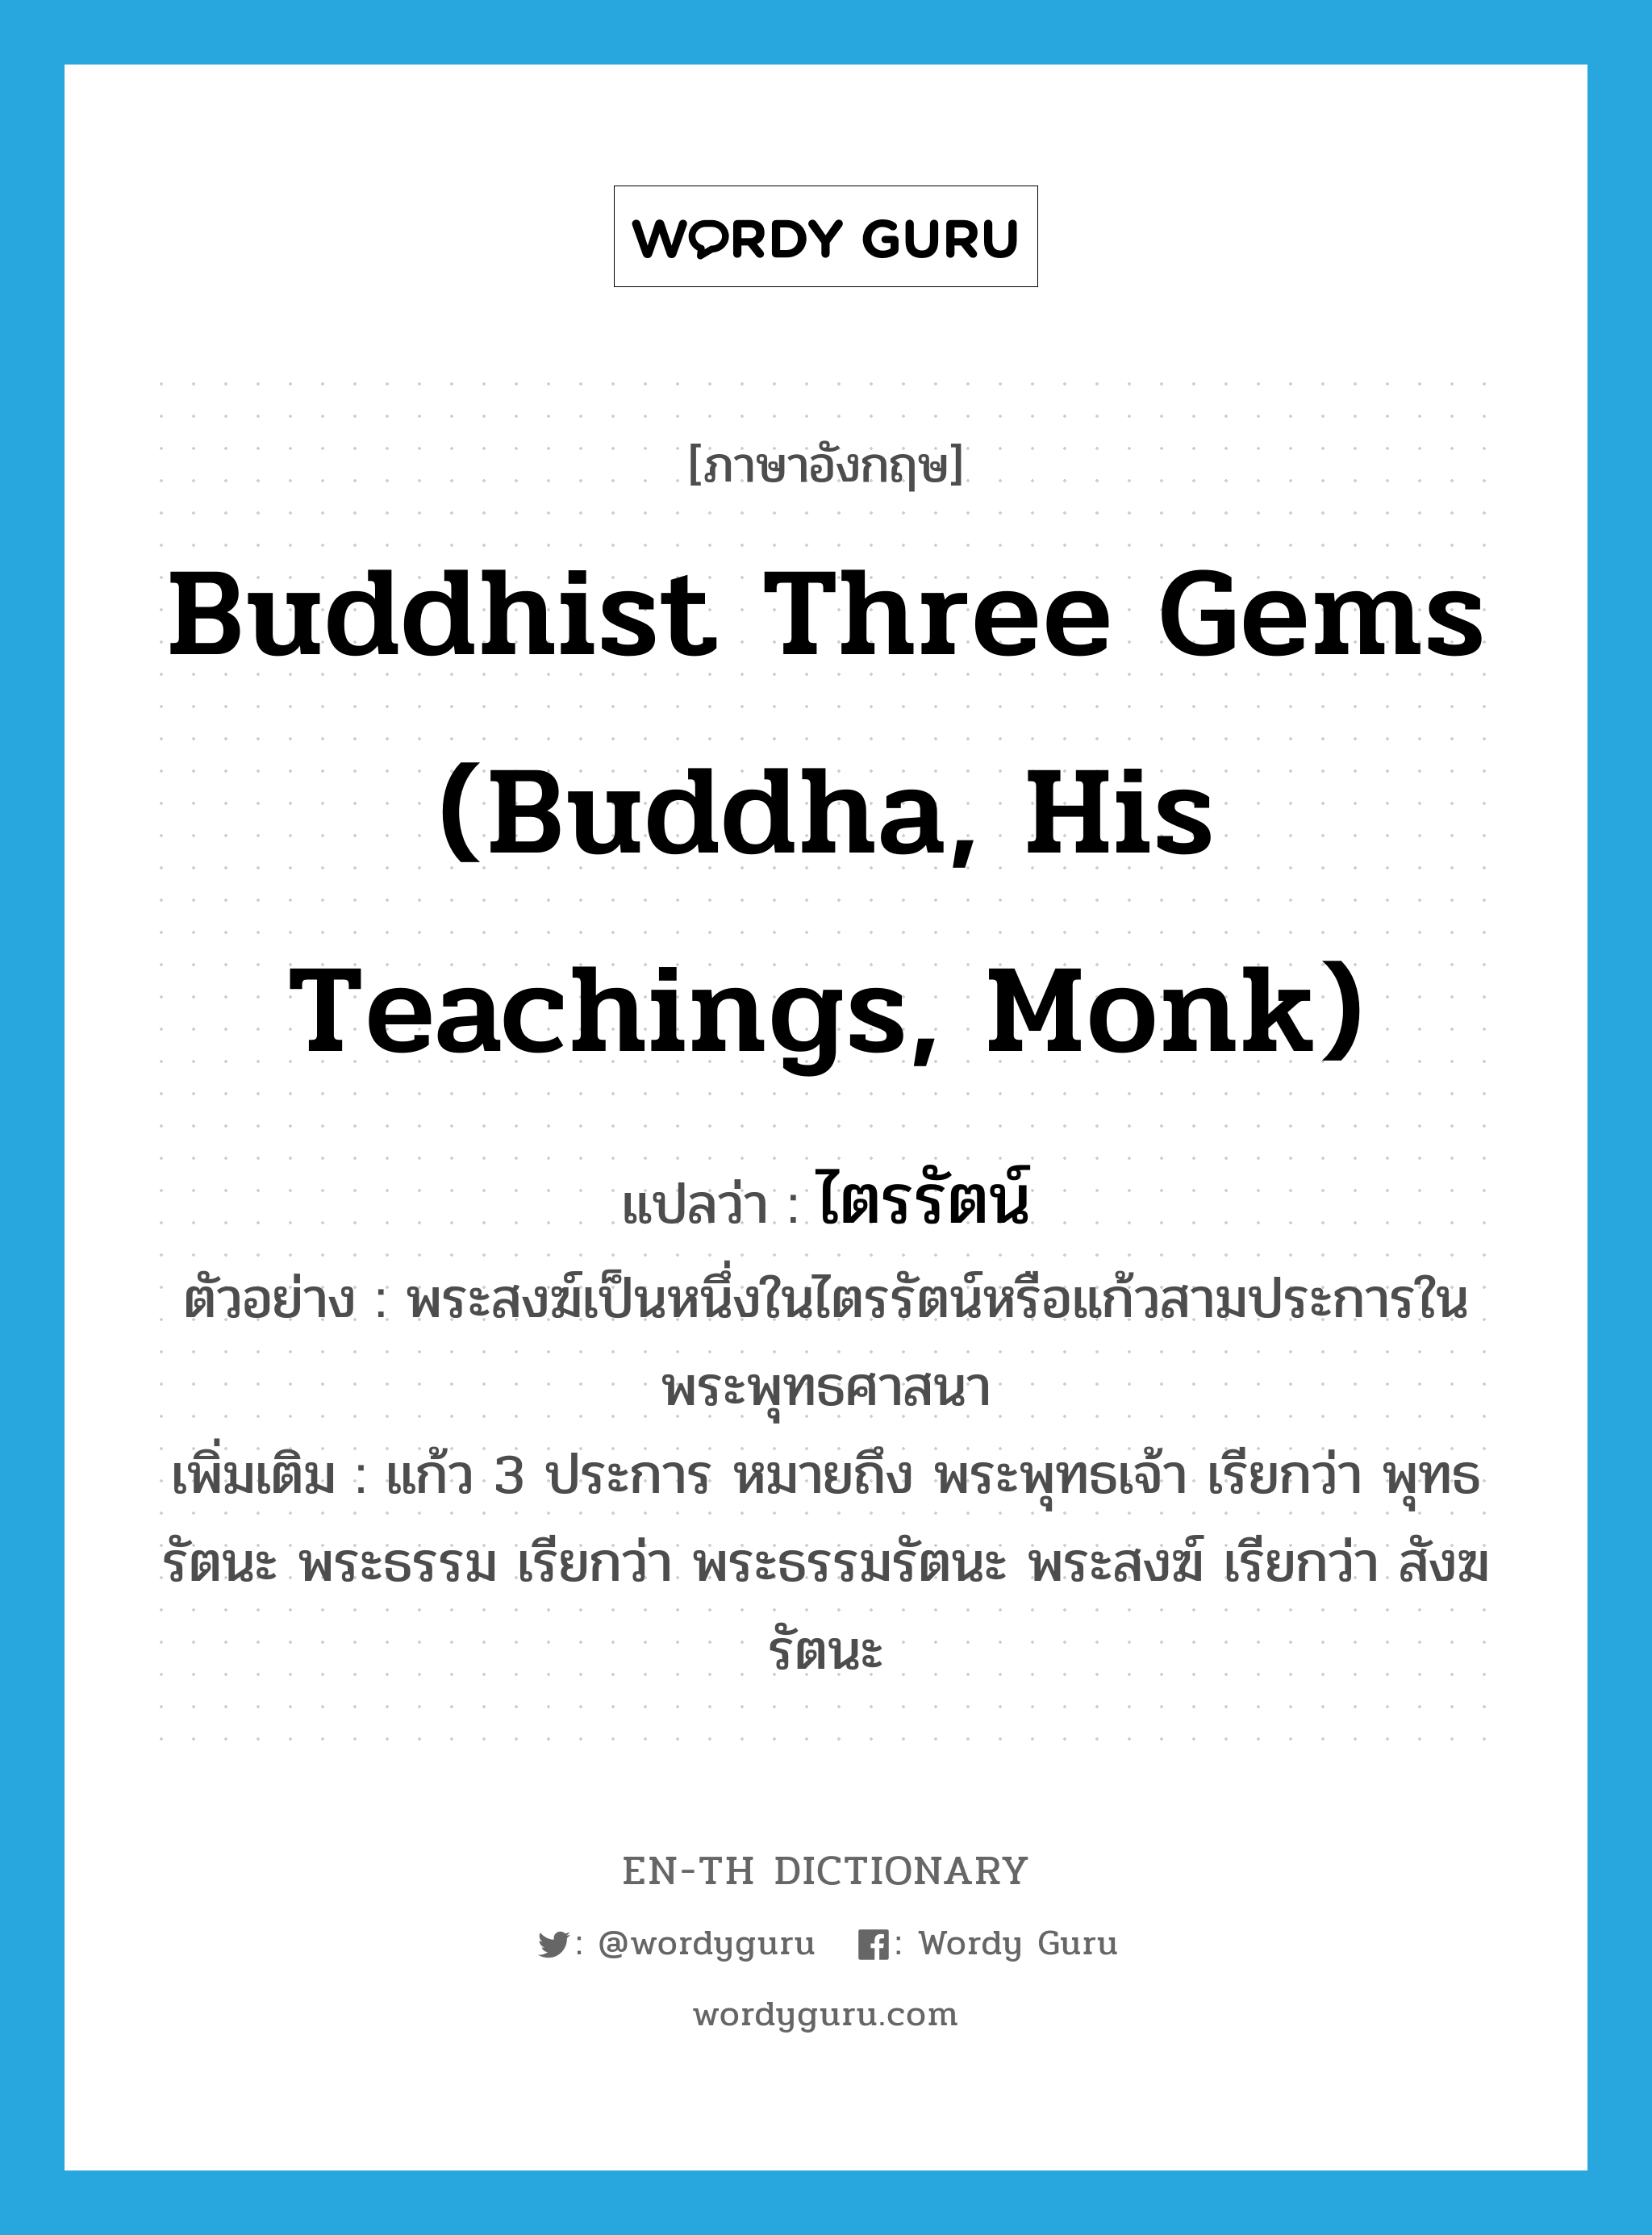 ไตรรัตน์ ภาษาอังกฤษ?, คำศัพท์ภาษาอังกฤษ ไตรรัตน์ แปลว่า Buddhist Three Gems (Buddha, His Teachings, Monk) ประเภท N ตัวอย่าง พระสงฆ์เป็นหนึ่งในไตรรัตน์หรือแก้วสามประการในพระพุทธศาสนา เพิ่มเติม แก้ว 3 ประการ หมายถึง พระพุทธเจ้า เรียกว่า พุทธรัตนะ พระธรรม เรียกว่า พระธรรมรัตนะ พระสงฆ์ เรียกว่า สังฆรัตนะ หมวด N